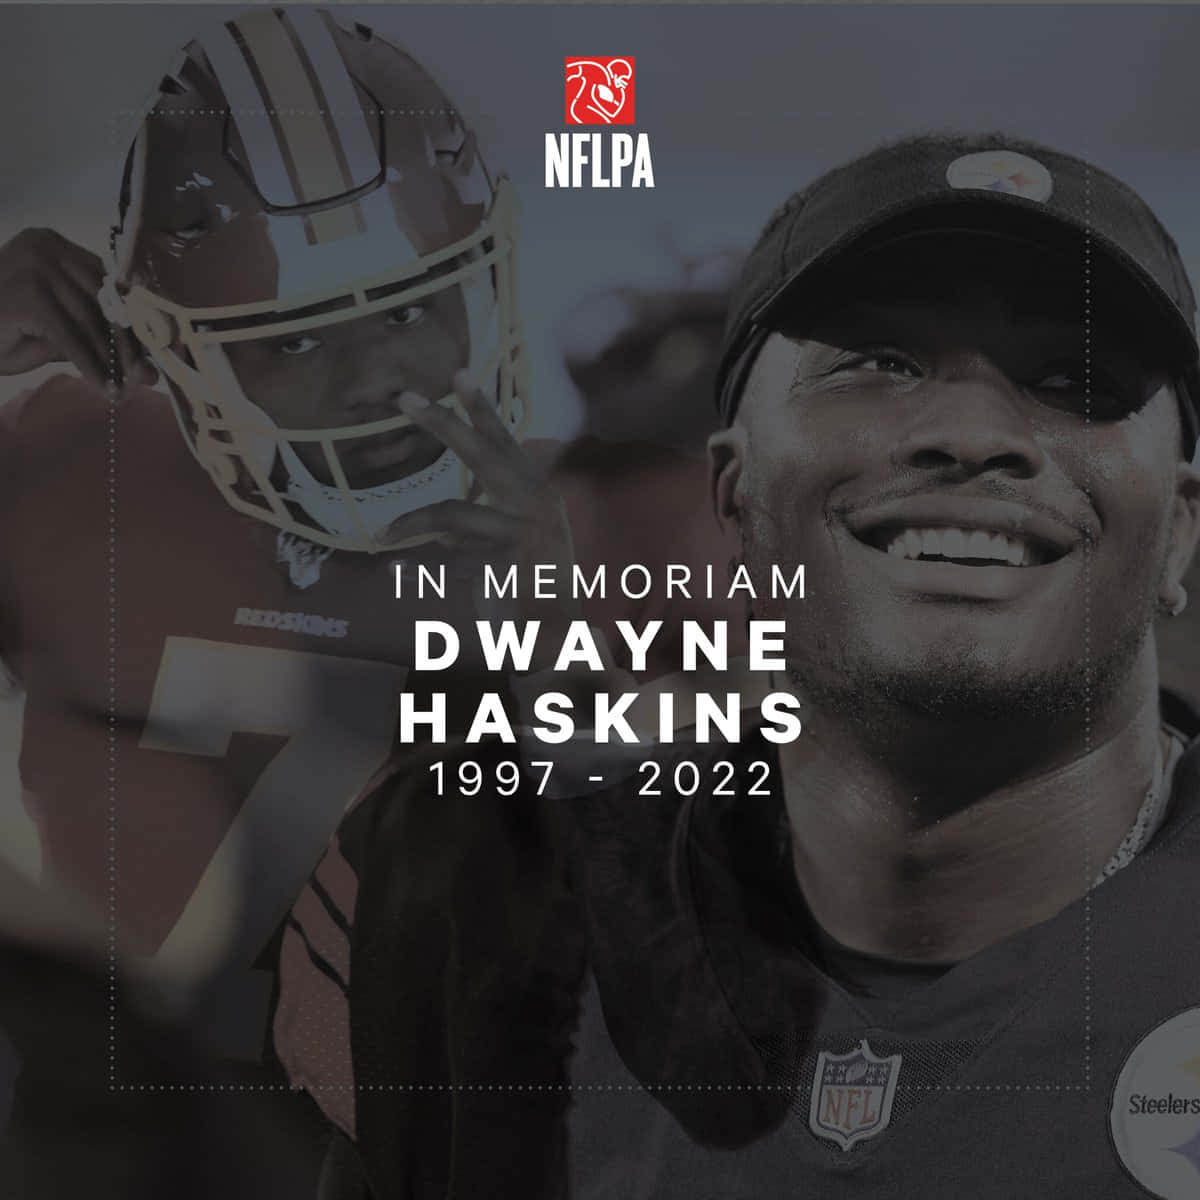 Dwaynehaskins Zeigt Eine Beeindruckende Leistung Als Quarterback Des Washington Football Teams. Wallpaper